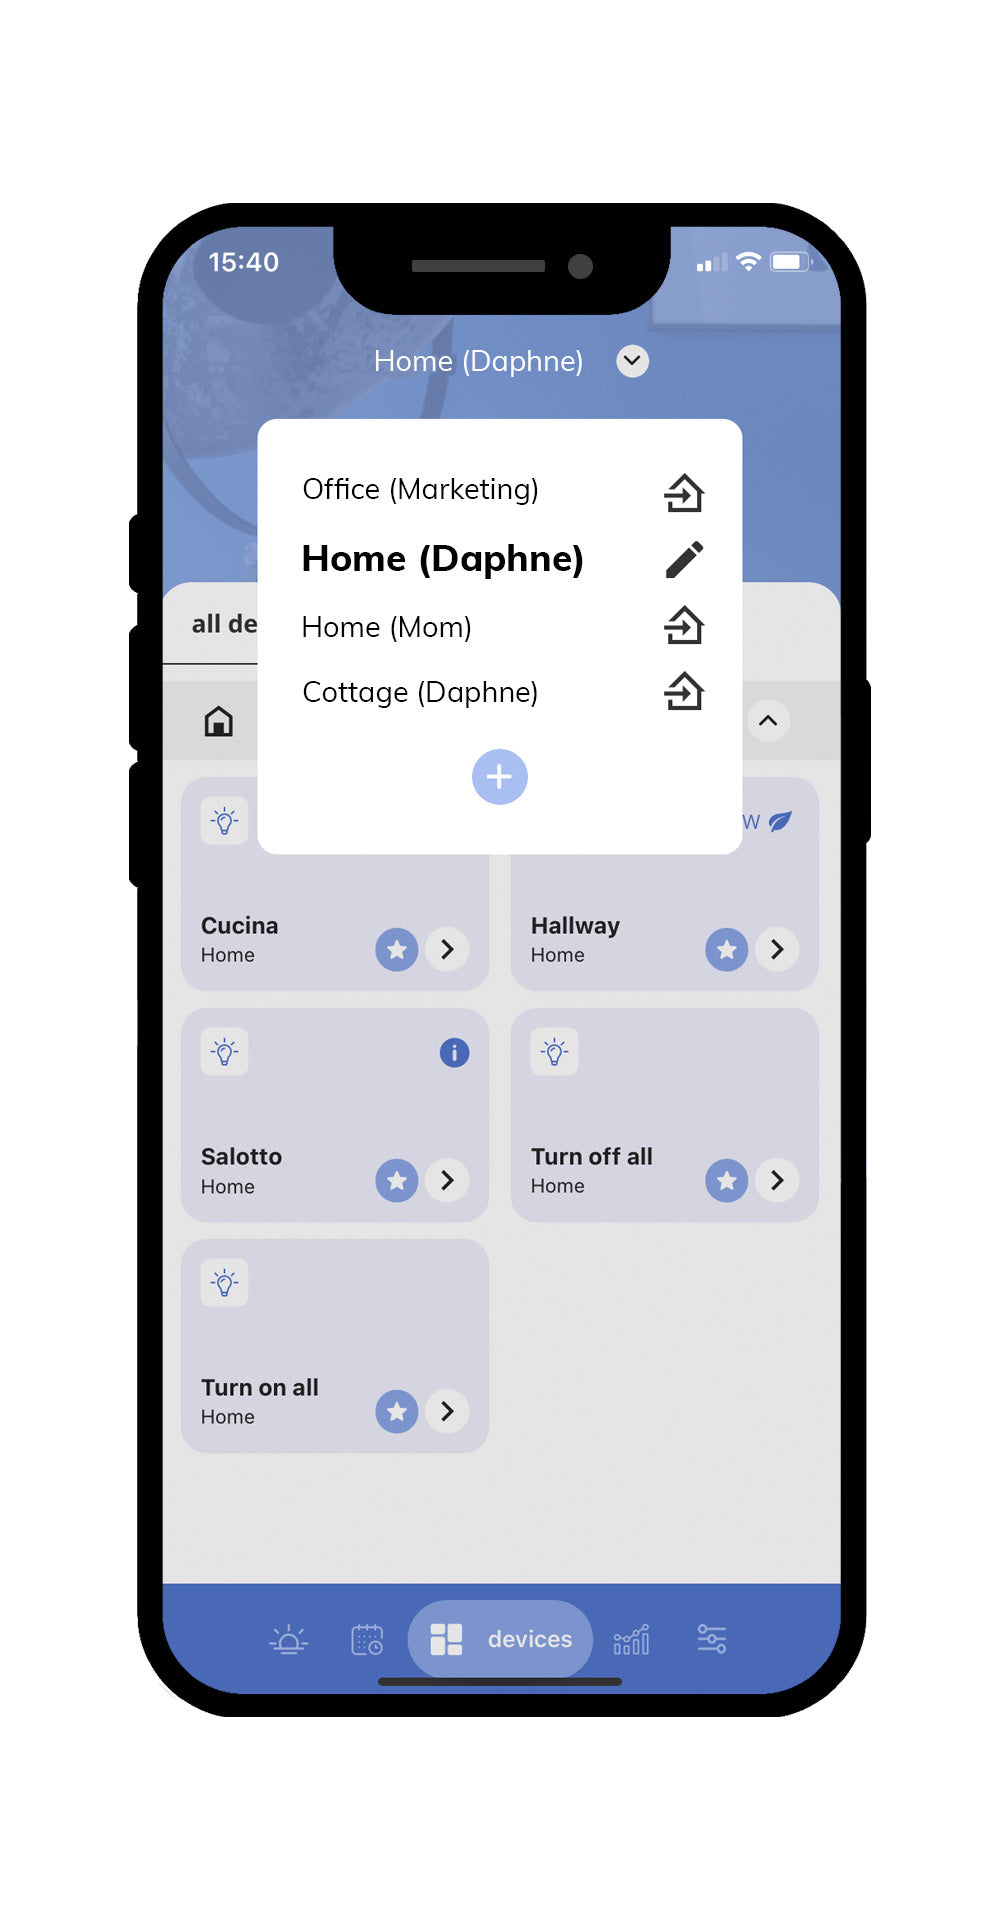 Officiell iotty-app för iOS och Android som är enkel att använda för att hantera dina hemautomatiseringsenheter i olika hem och kontor